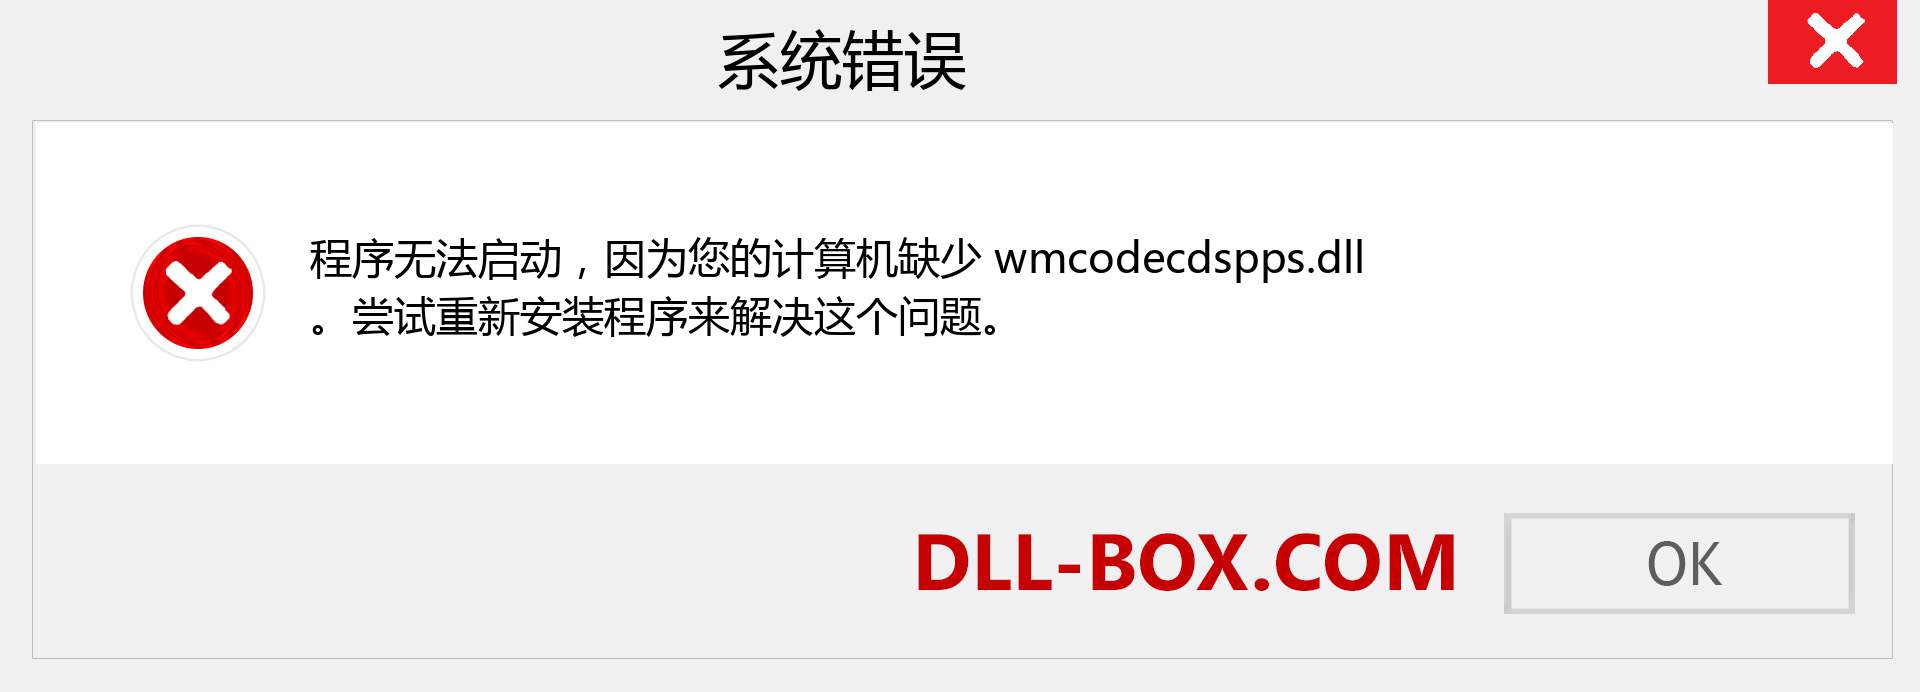 wmcodecdspps.dll 文件丢失？。 适用于 Windows 7、8、10 的下载 - 修复 Windows、照片、图像上的 wmcodecdspps dll 丢失错误